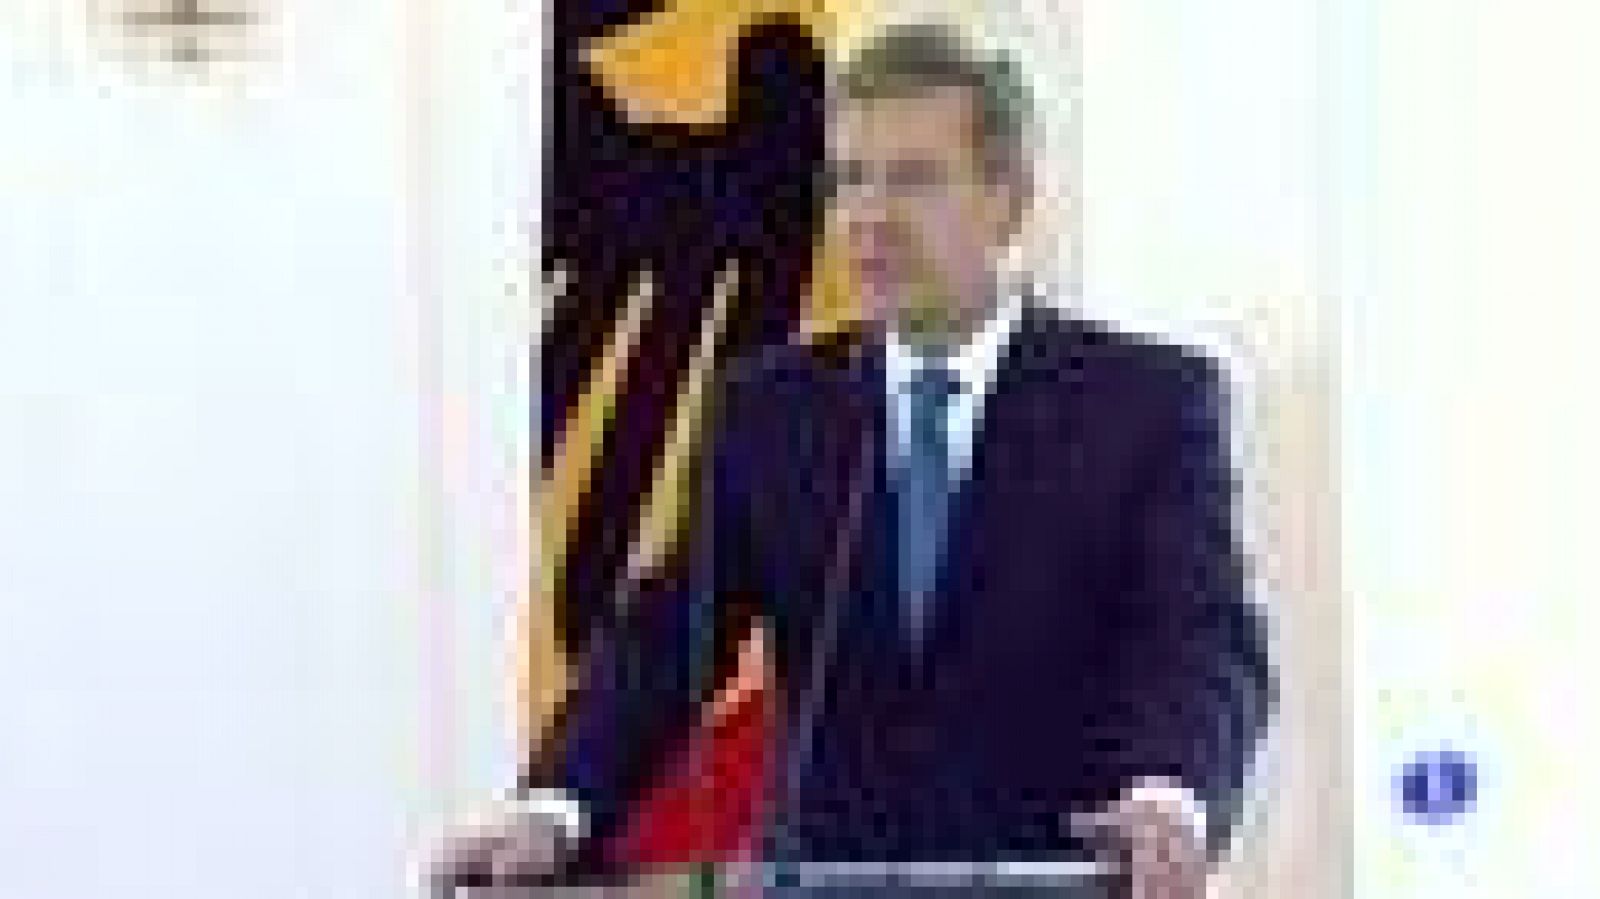 Dimite el presidente alemán Christian Wulff por posibles causas de corrupción